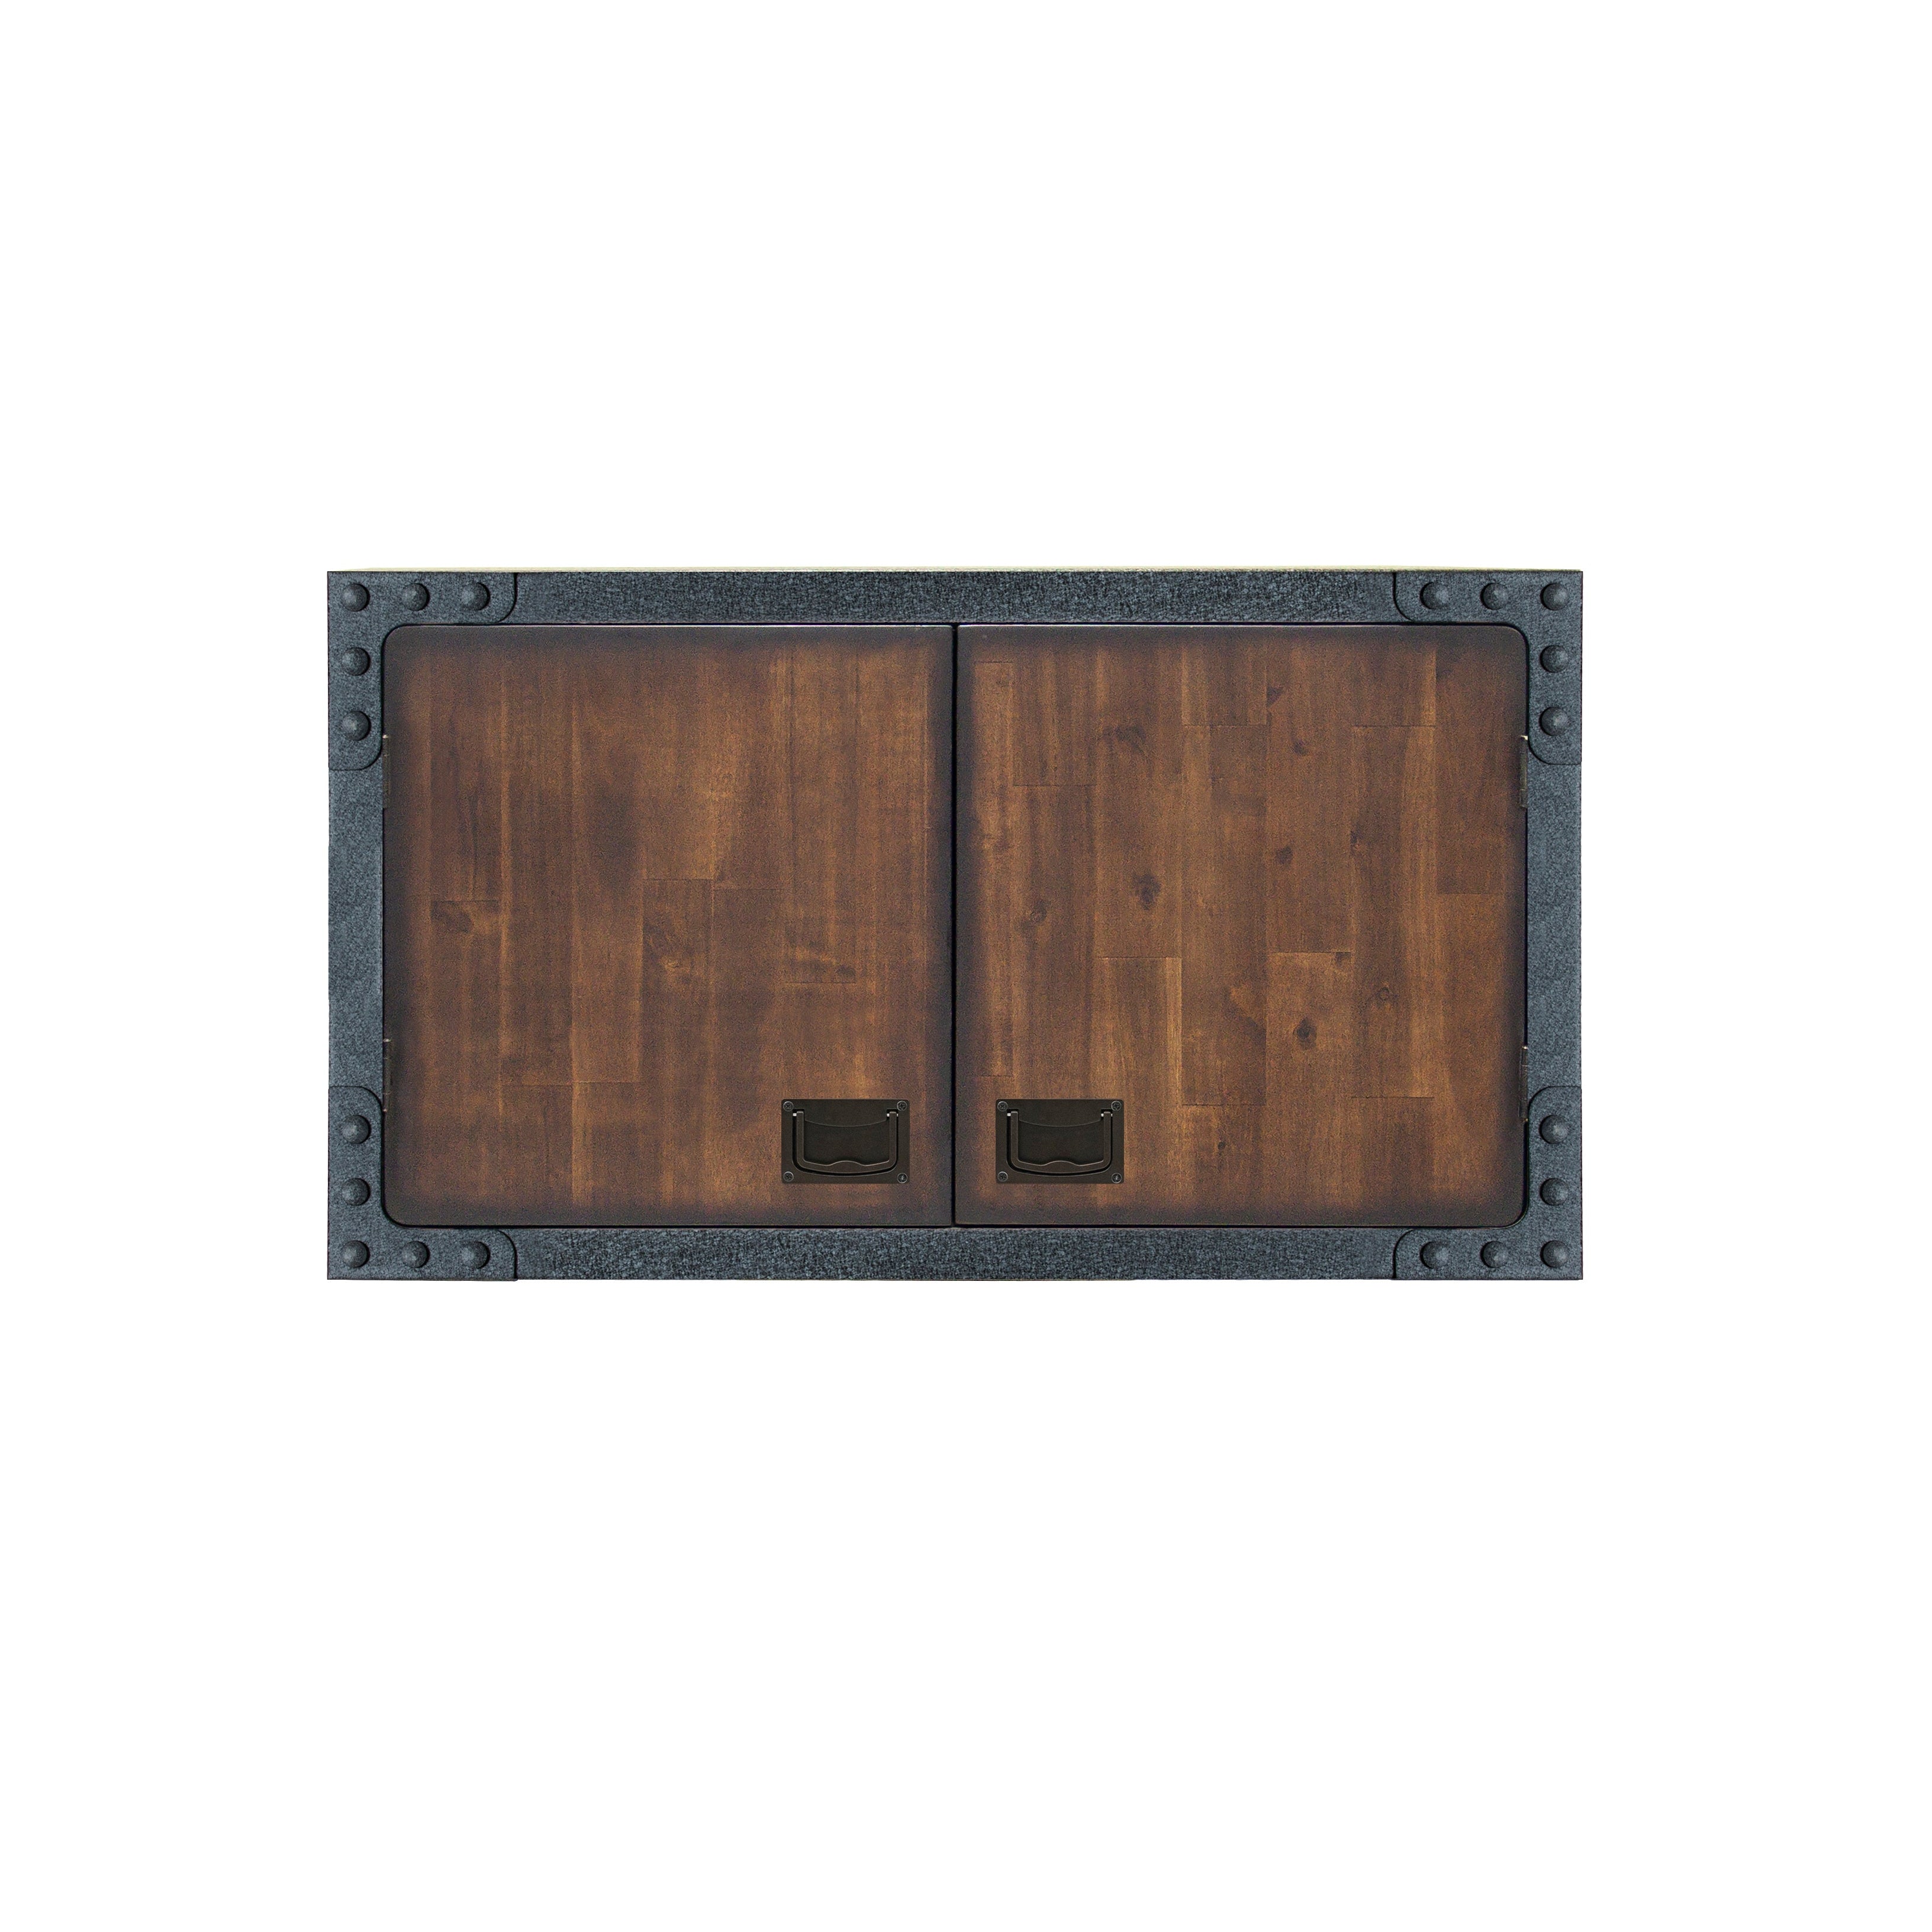 https://durasheds.com/cdn/shop/products/duramax-garage-storage-duramax-3-piece-garage-set-featuring-workbench-and-cabinets-37200380002541.jpg?v=1682981062